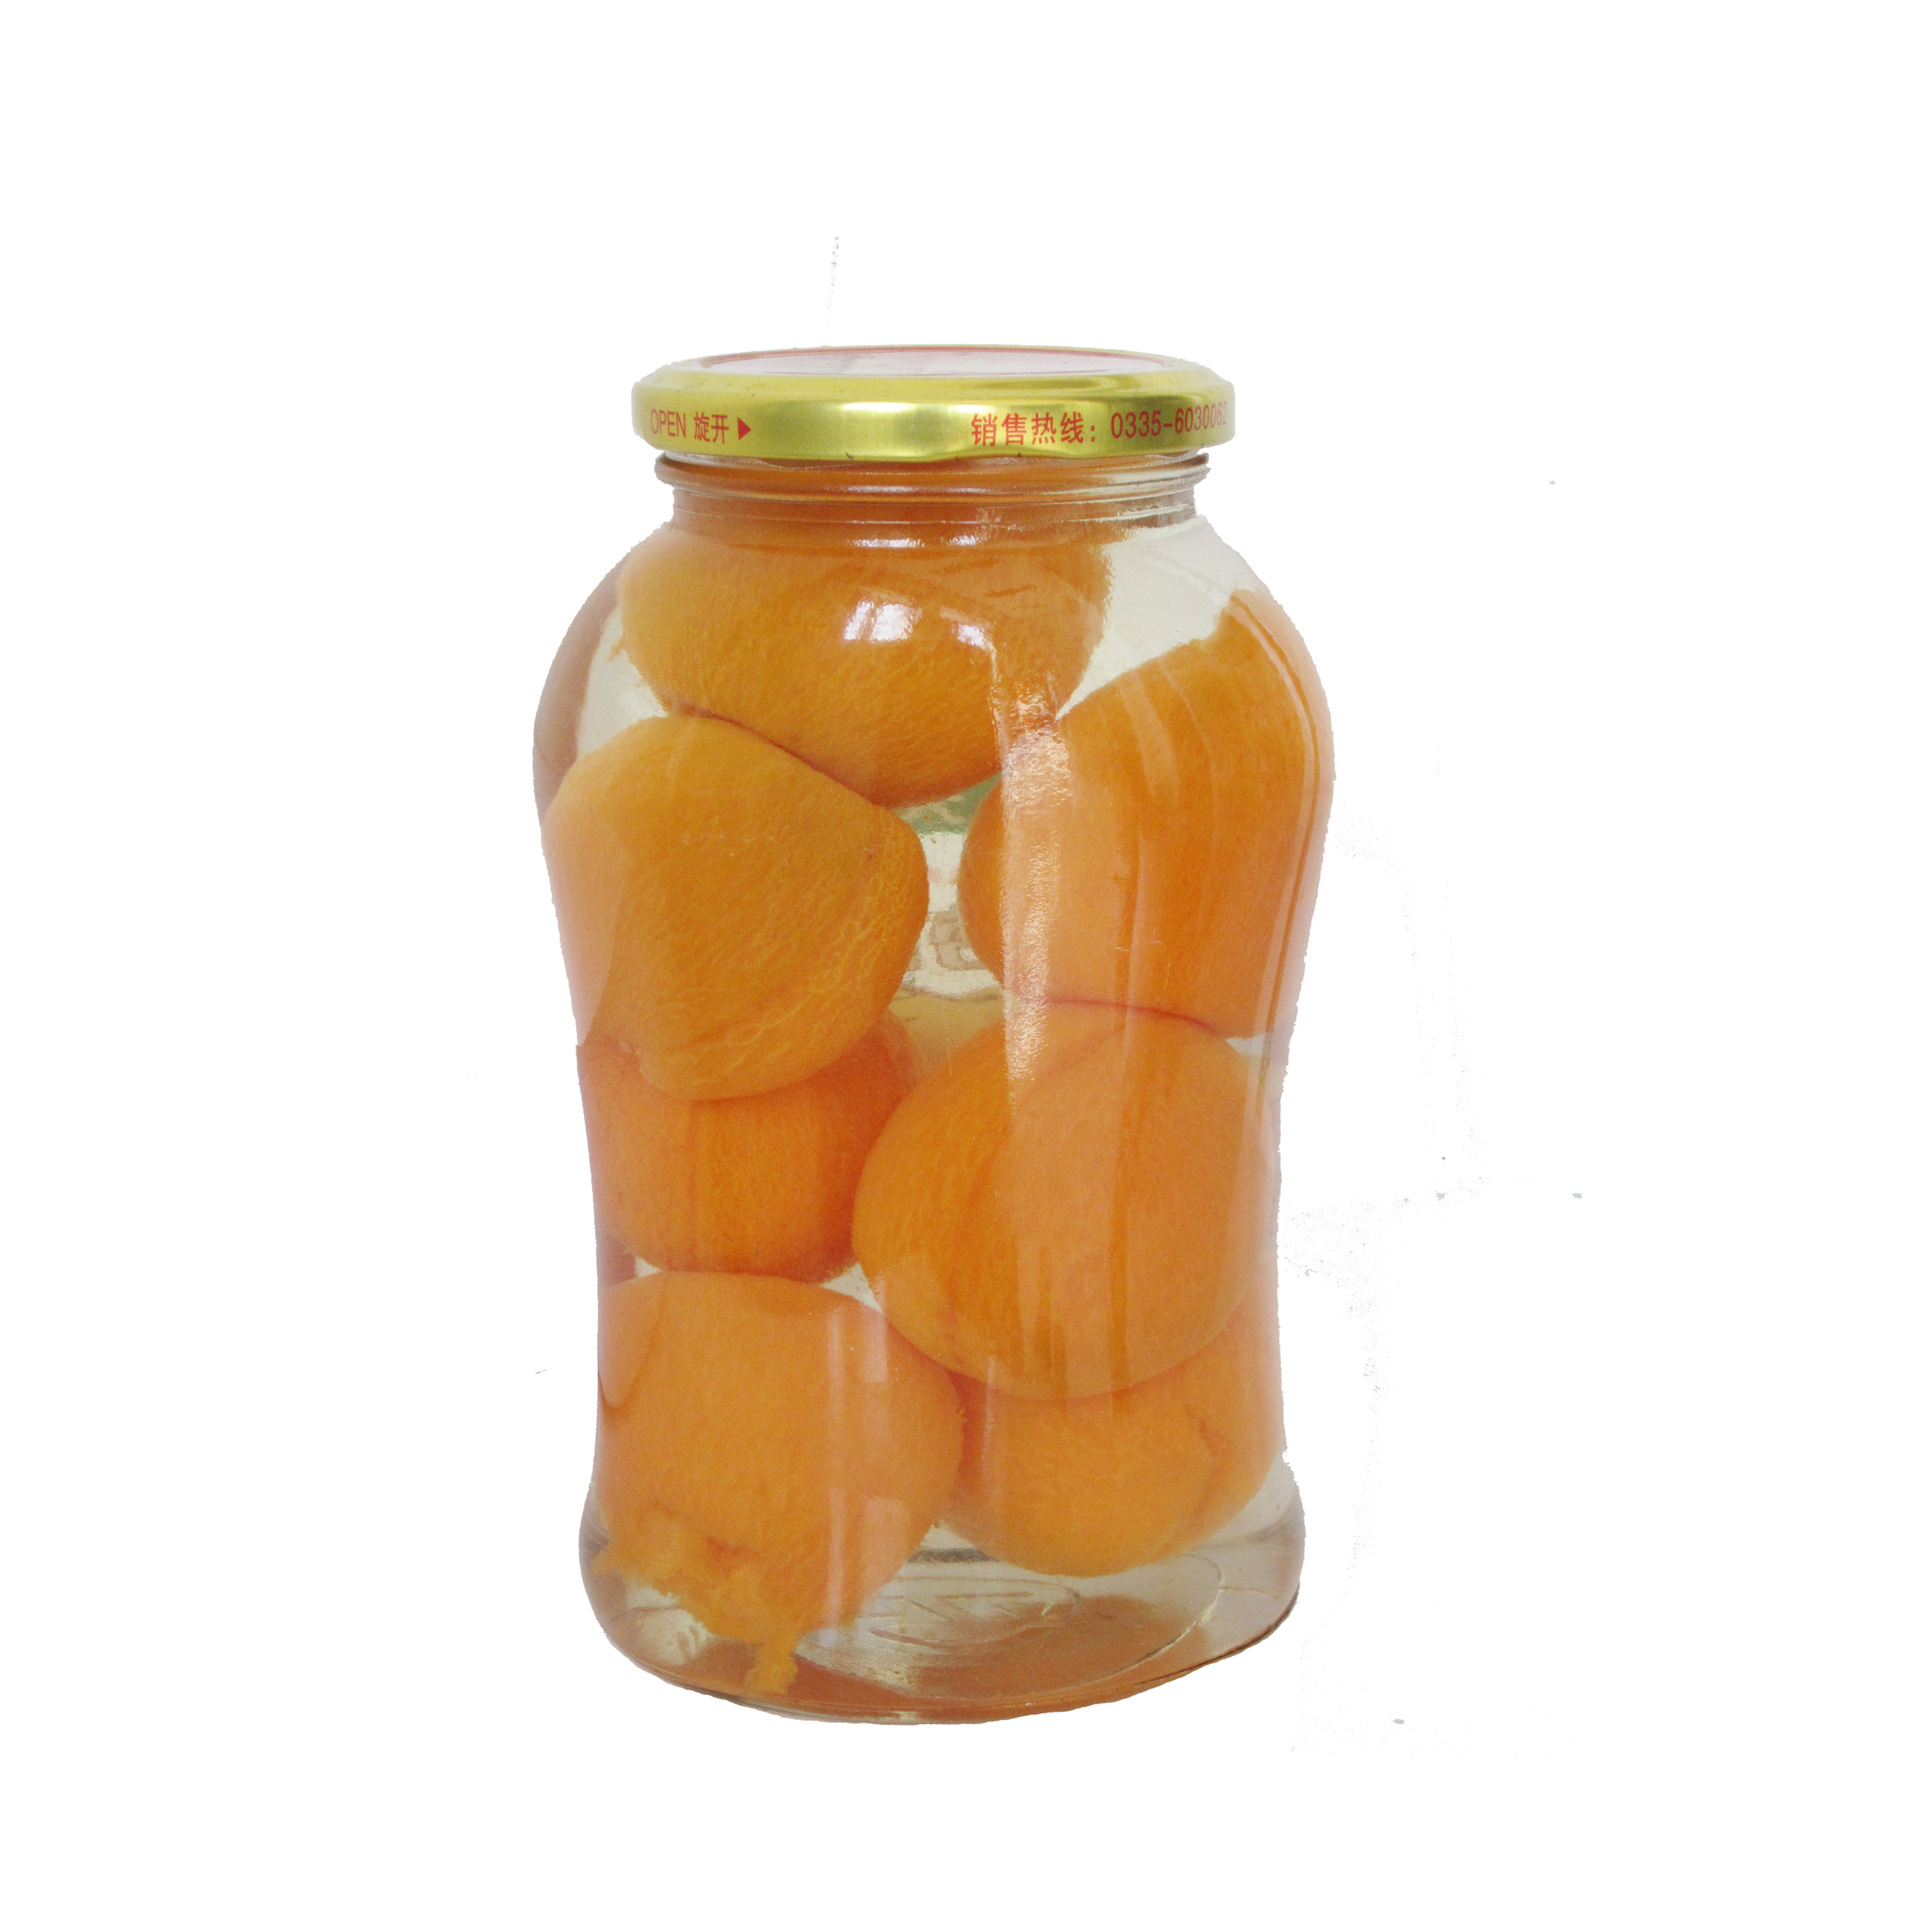 糖水杏罐头(700g)图片,糖水杏罐头(700g)图片大全,秦皇岛市天马食品厂